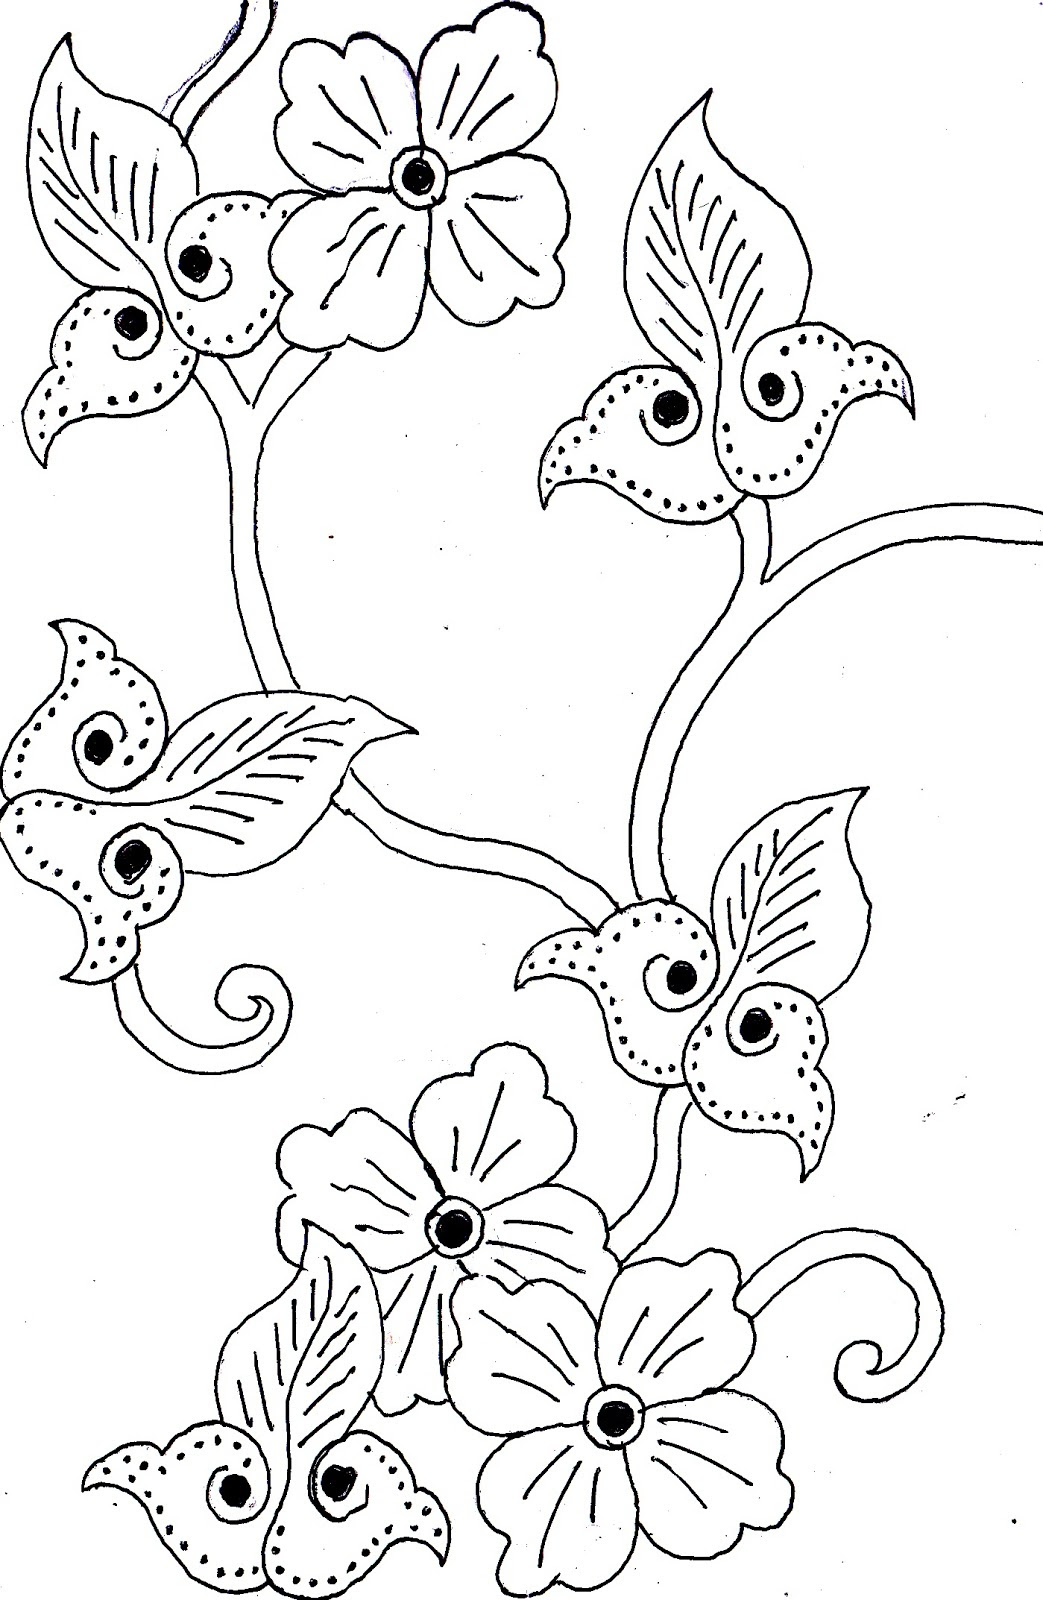 Gambar Motif Batik Bunga Simple - Contoh Motif Batik